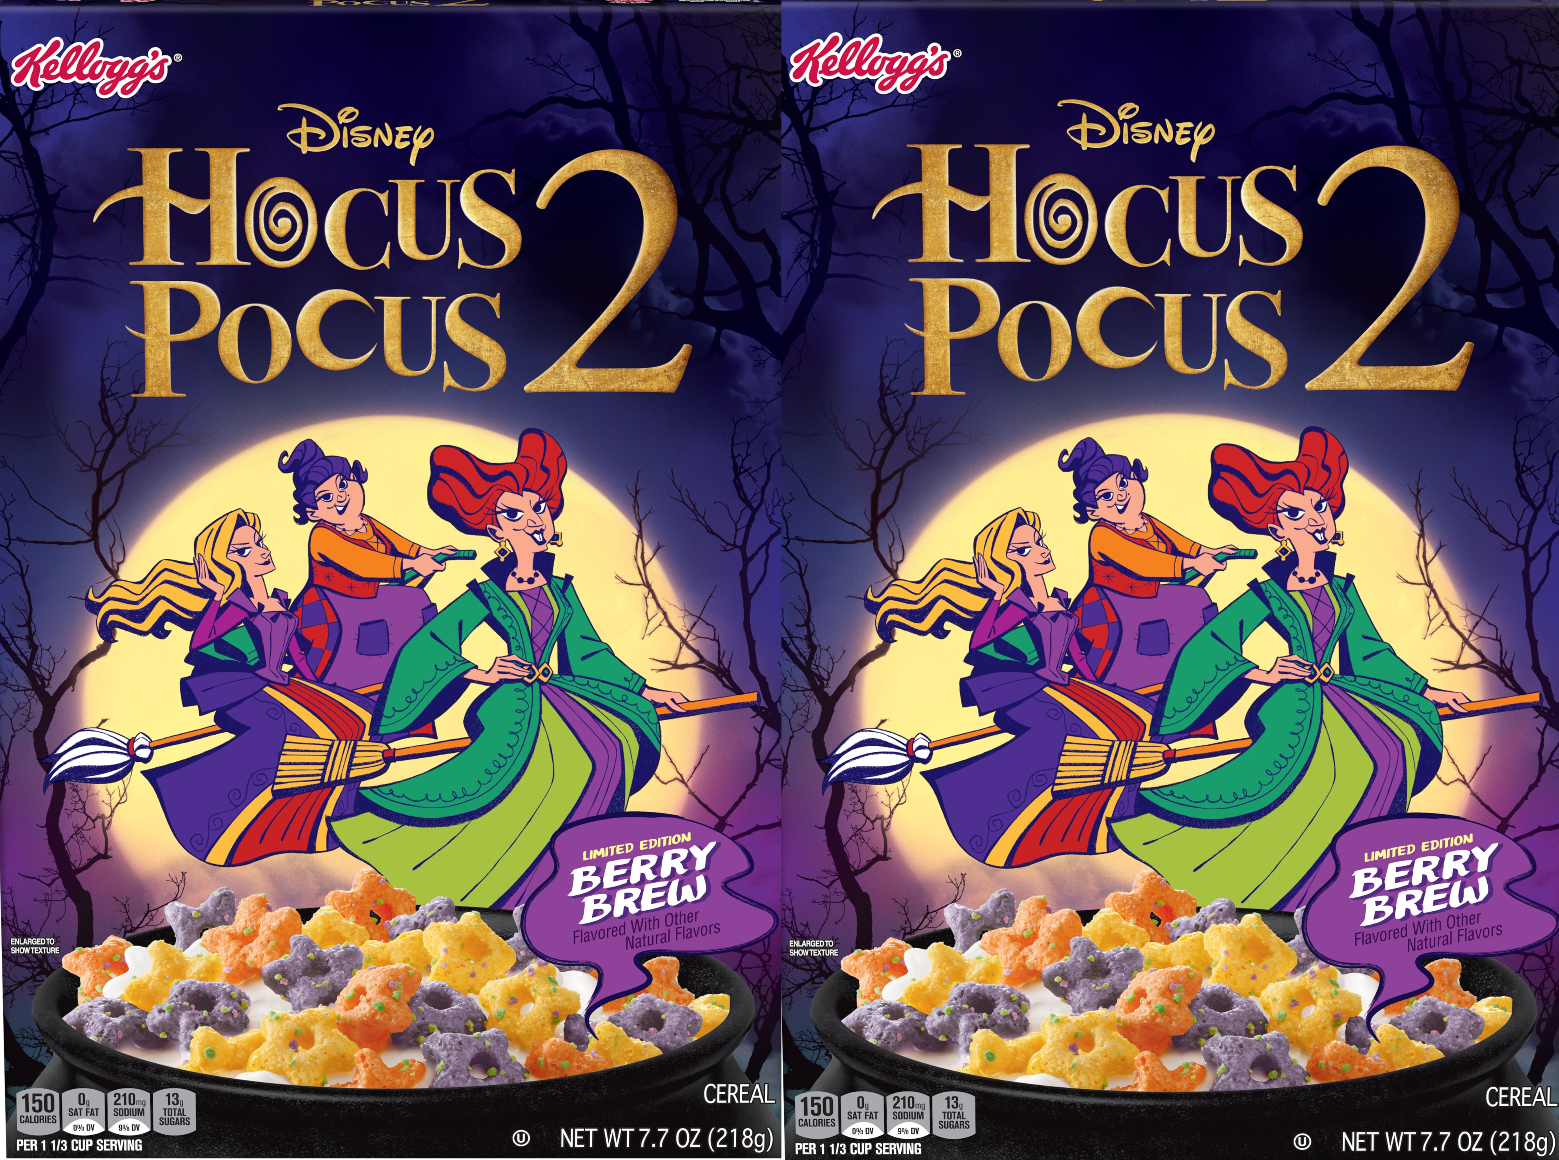 Disney's Hocus Pocus 2